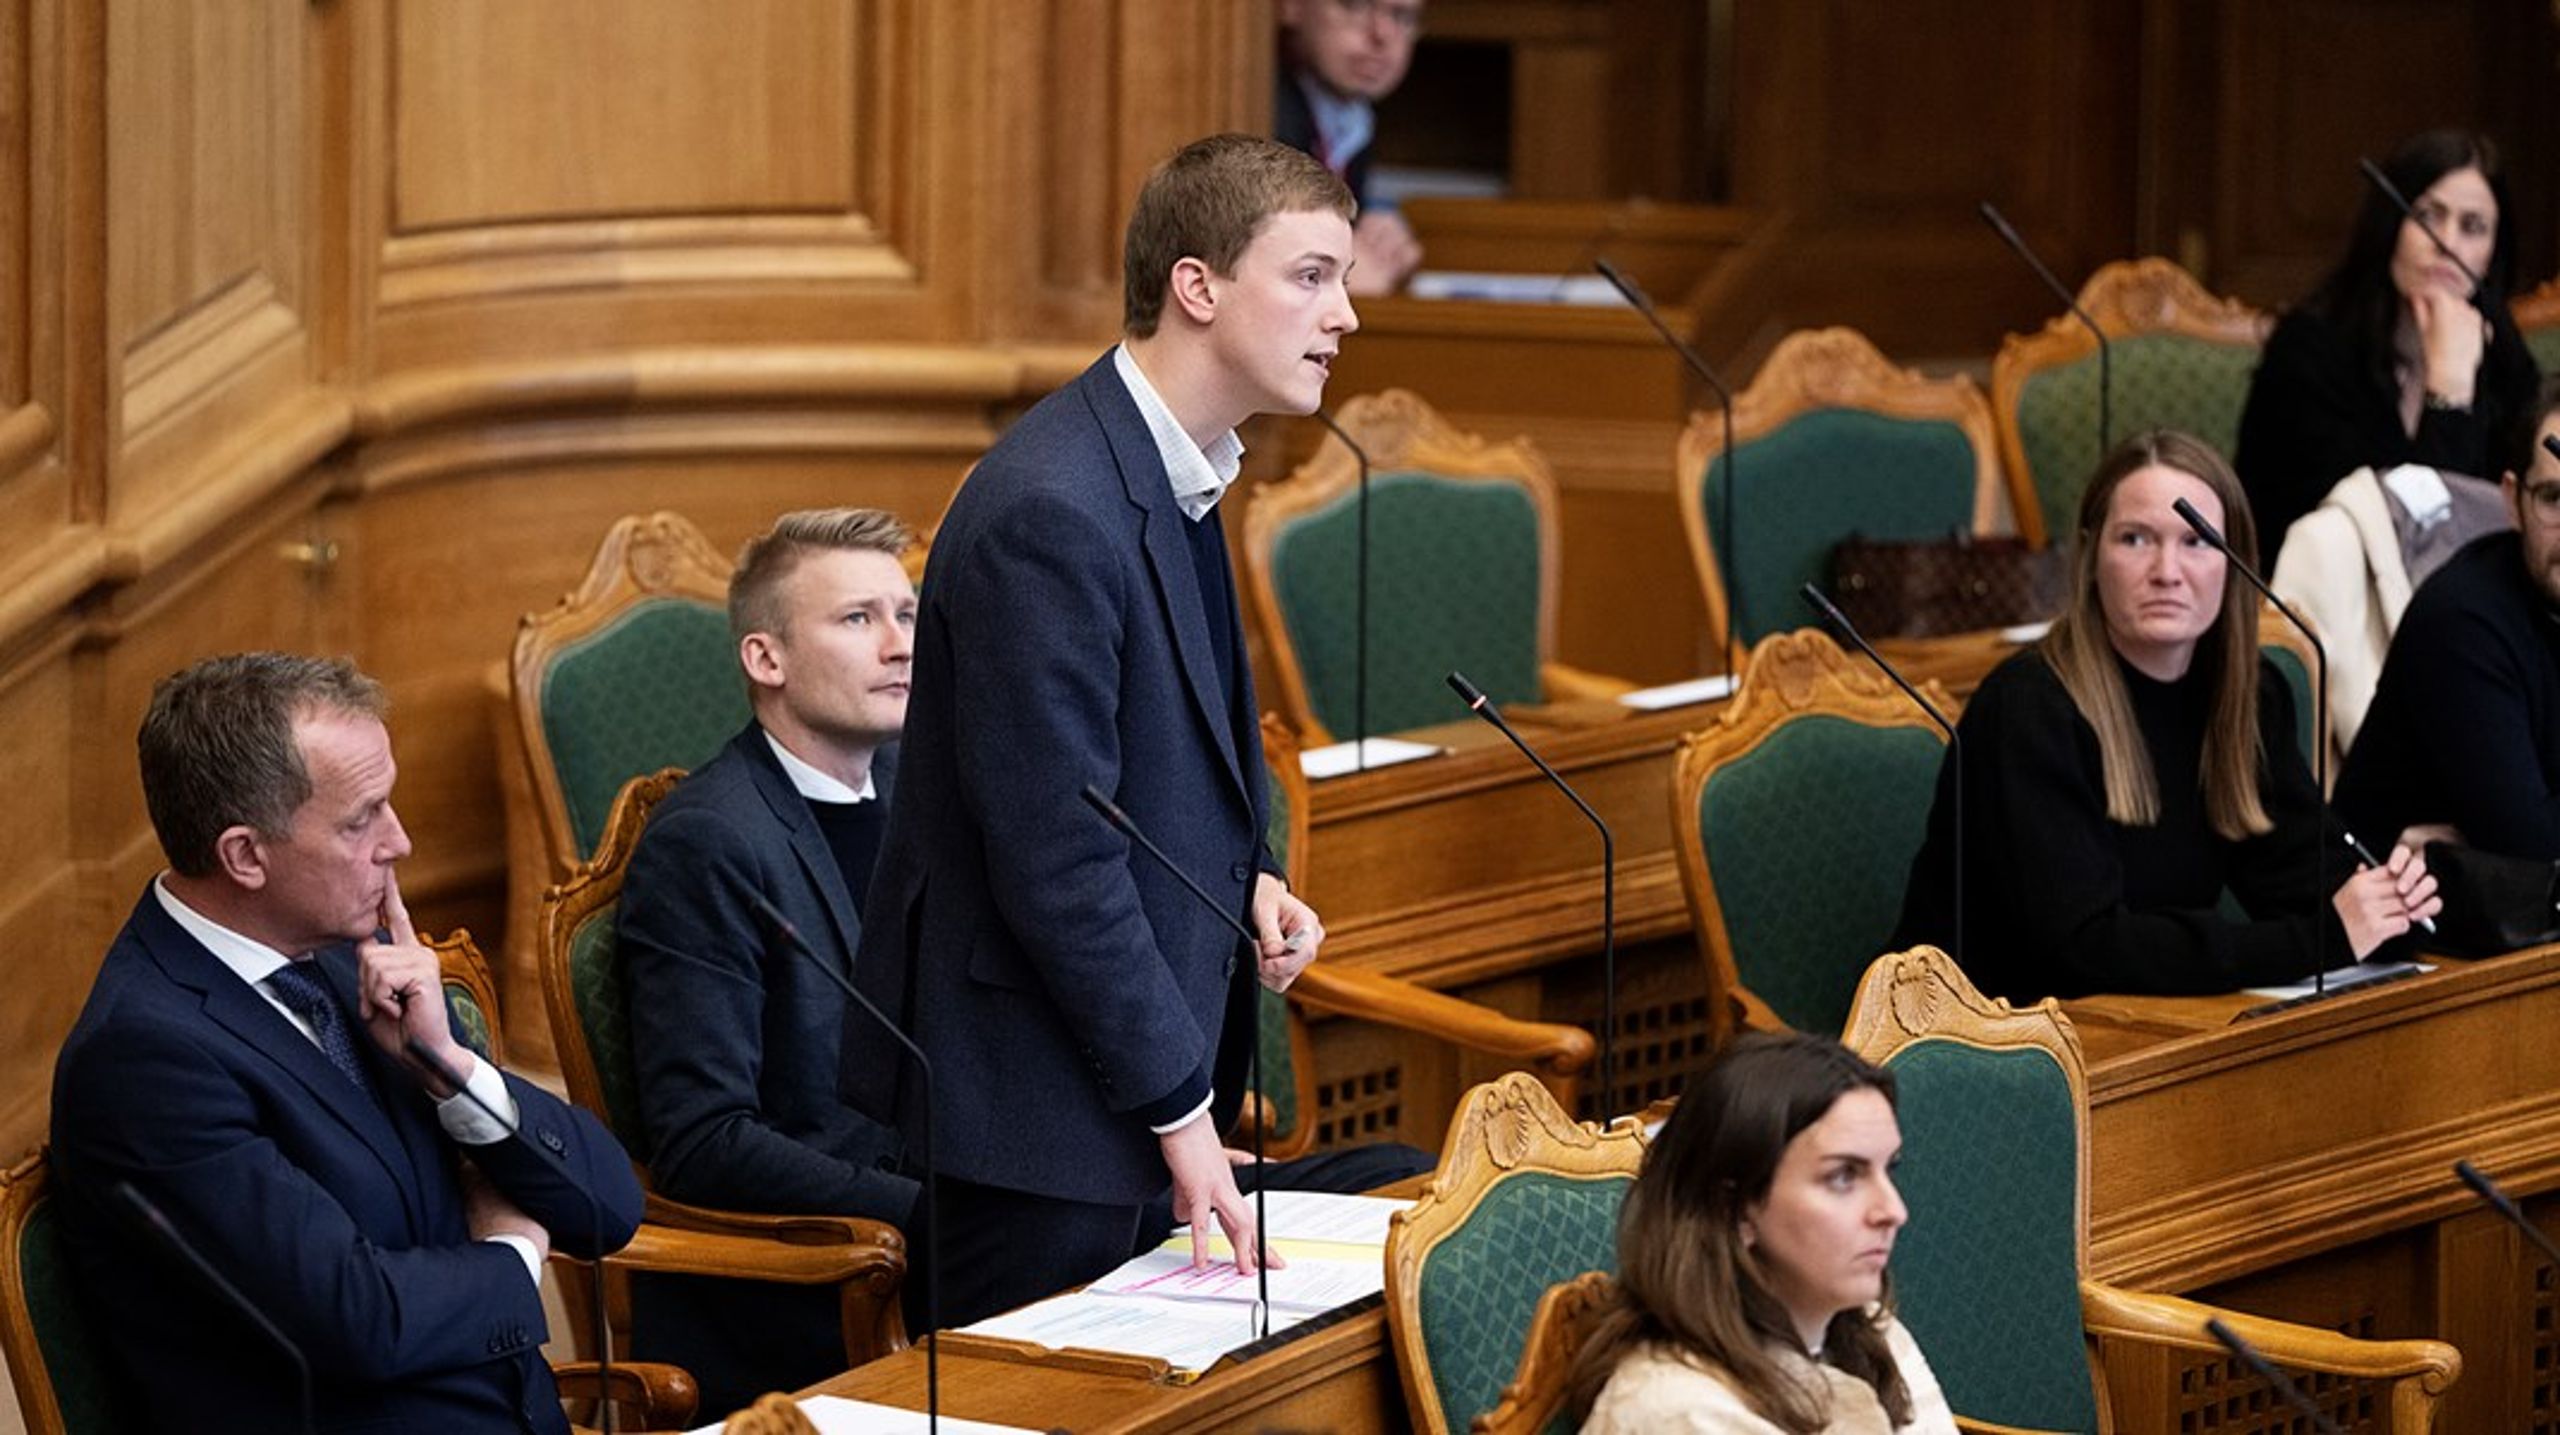 Som ny ligestillingsordfører i Dansk Folkeparti ser&nbsp;Mikkel Bjørn frem til at skulle tage aktivt del i ligestillingsdebatten og udfordre venstrefløjen.